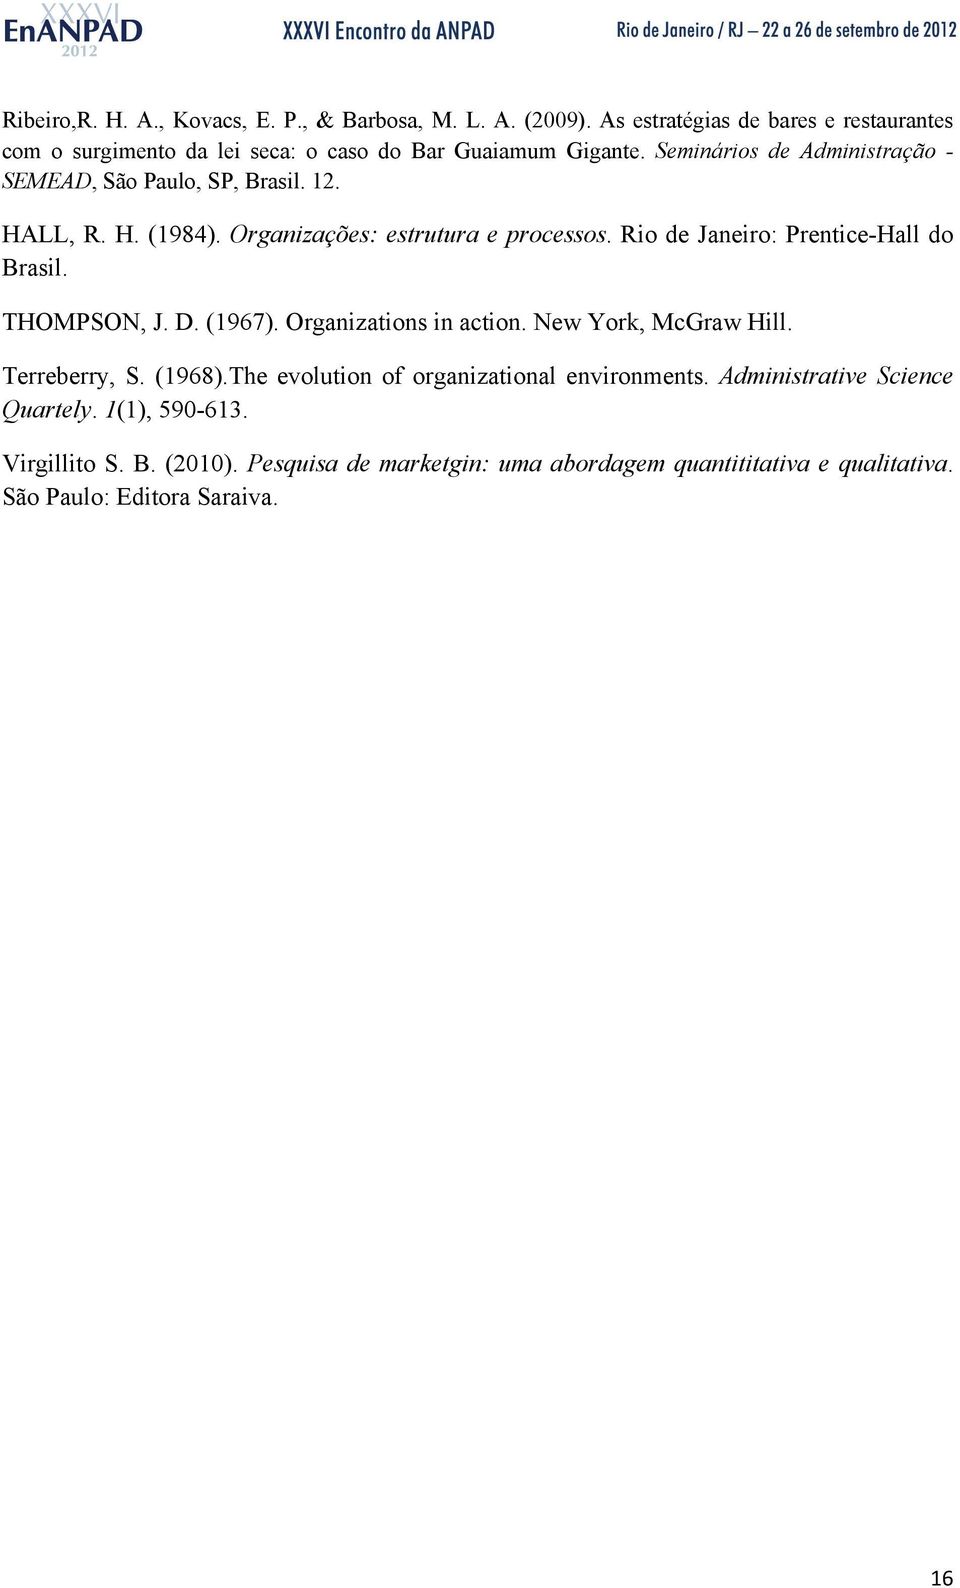 Seminários de Administração - SEMEAD, São Paulo, SP, Brasil. 12. HALL, R. H. (1984). Organizações: estrutura e processos.